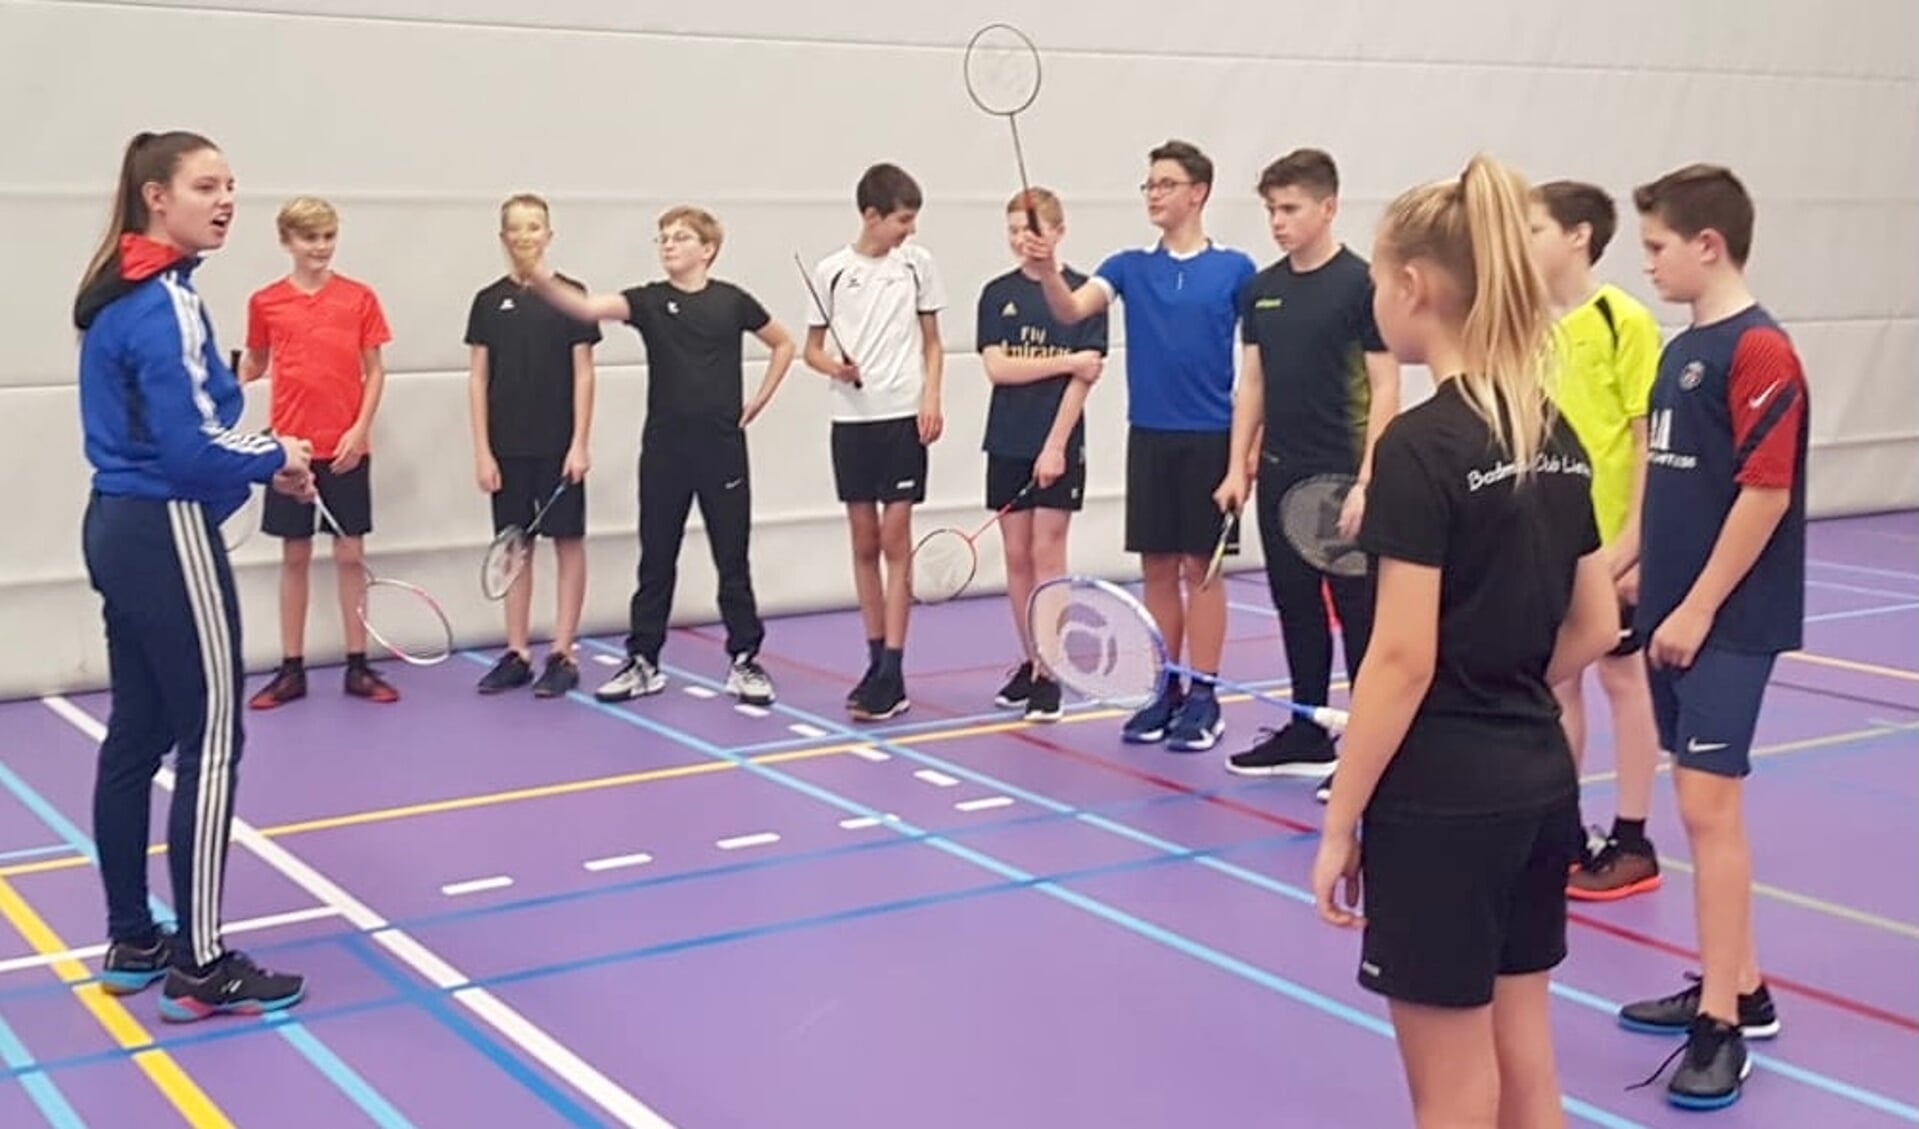 Badminton Club Lieshout heeft nog enkele clinics gegeven aan kinderen van de basisschool zodat ook zij kunnen zien hoe leuk badminton is!